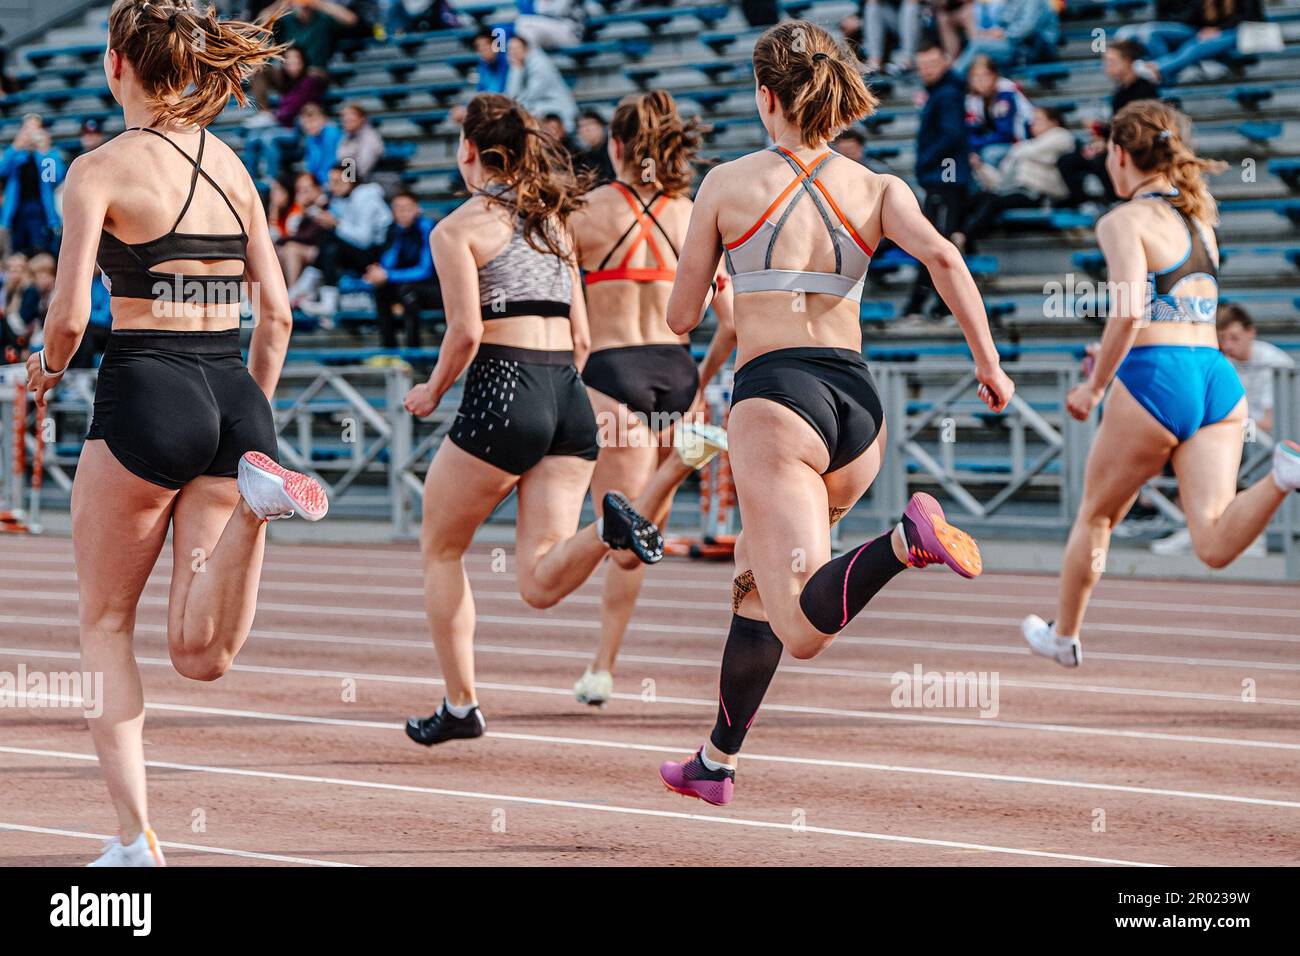 vista posteriore gruppo atleta runner in corsa sprint, campionati di atletica estiva Foto Stock